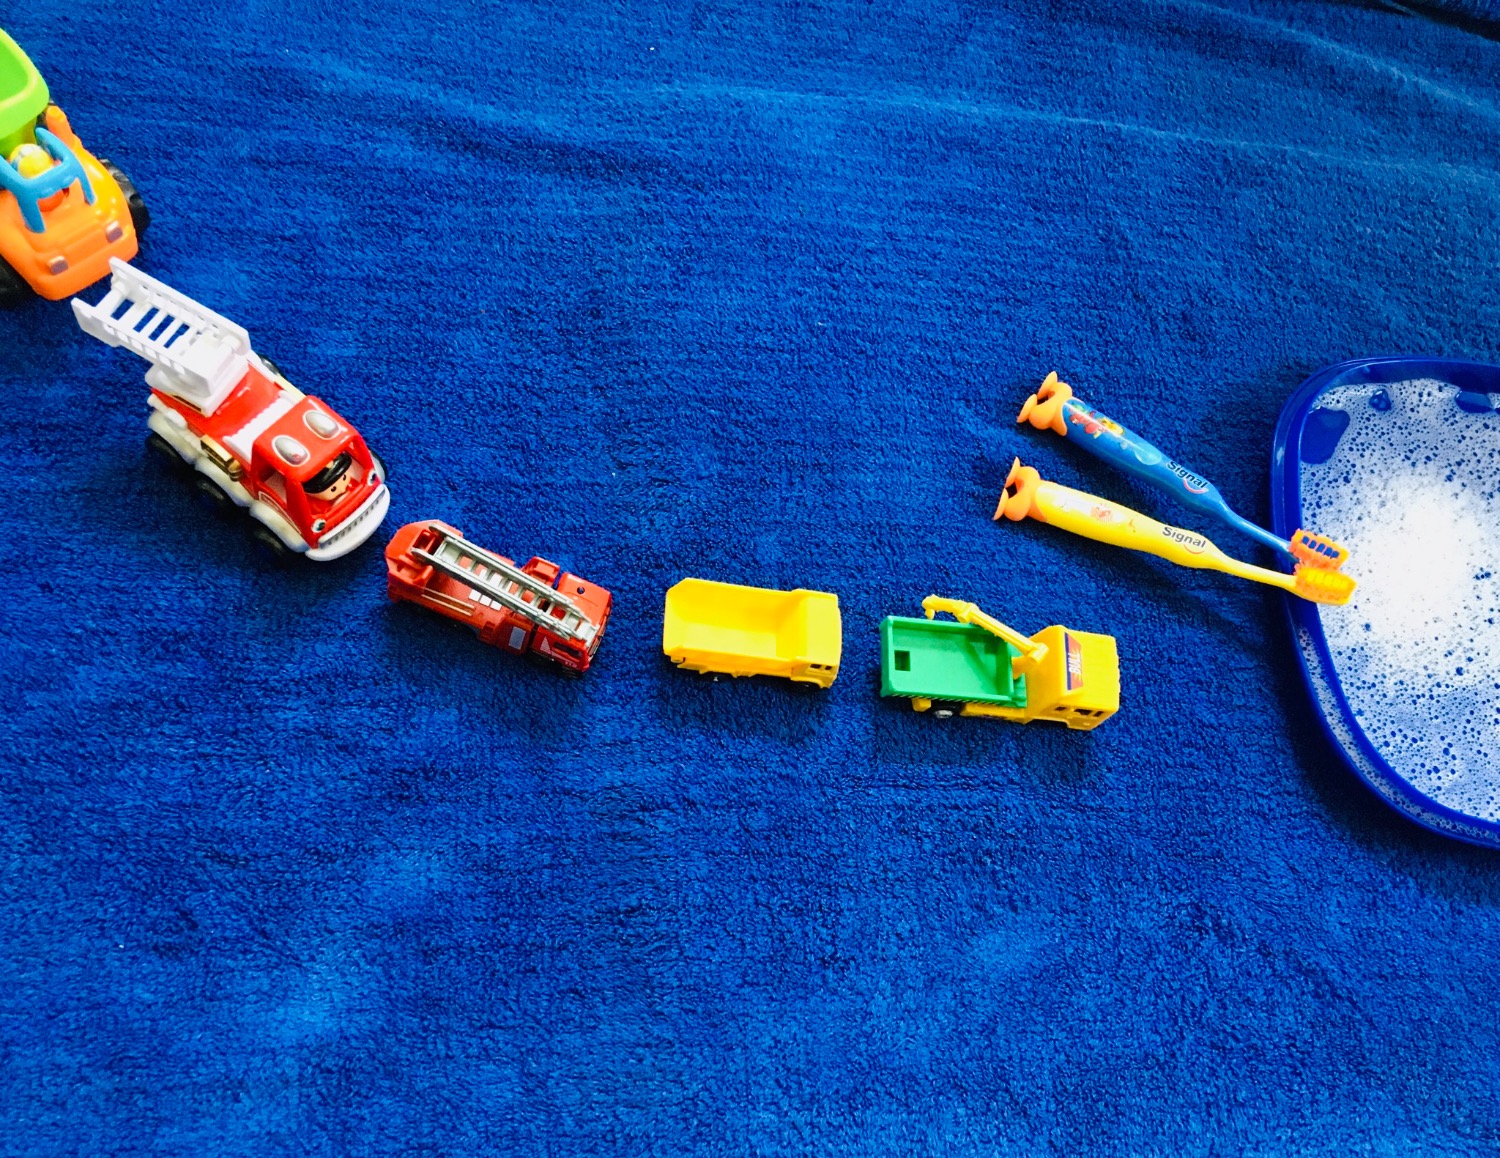 Titelbild zur Idee für die Beschäftigung mit Kindern '(55) Waschstraße für Spielzeug-Autos spielen'